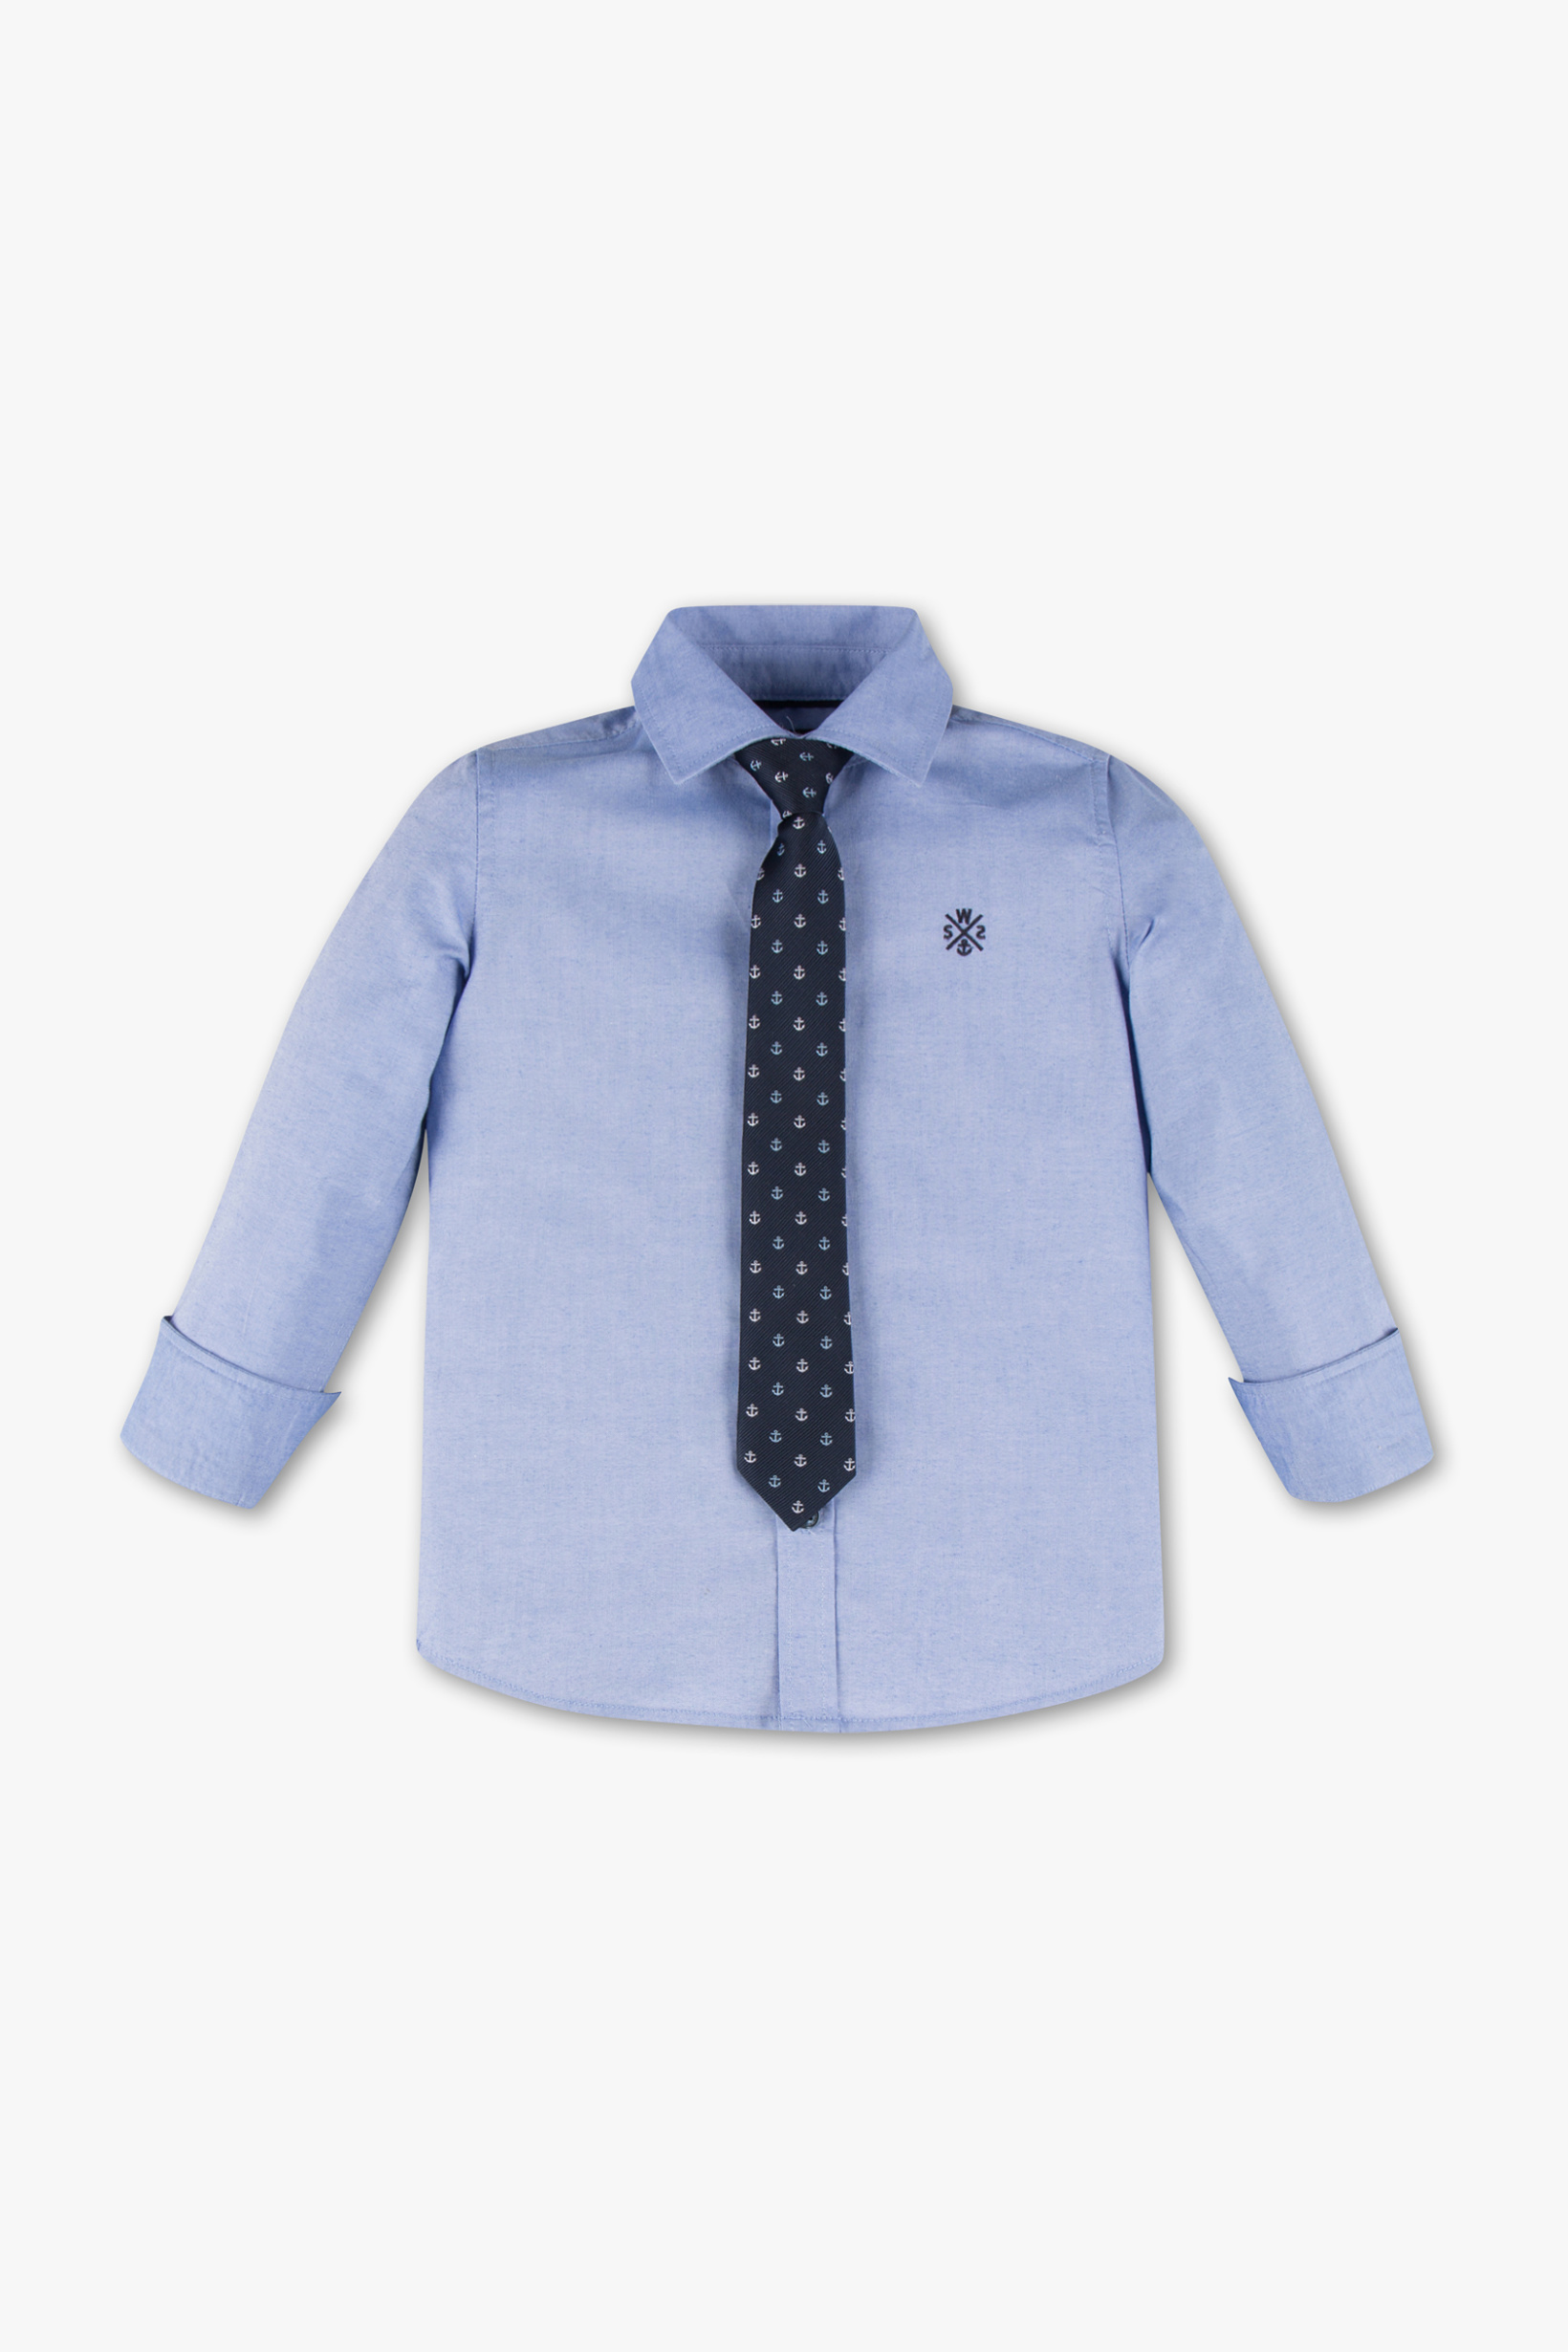 Palomino Set overhemd met stropdas 2-delig